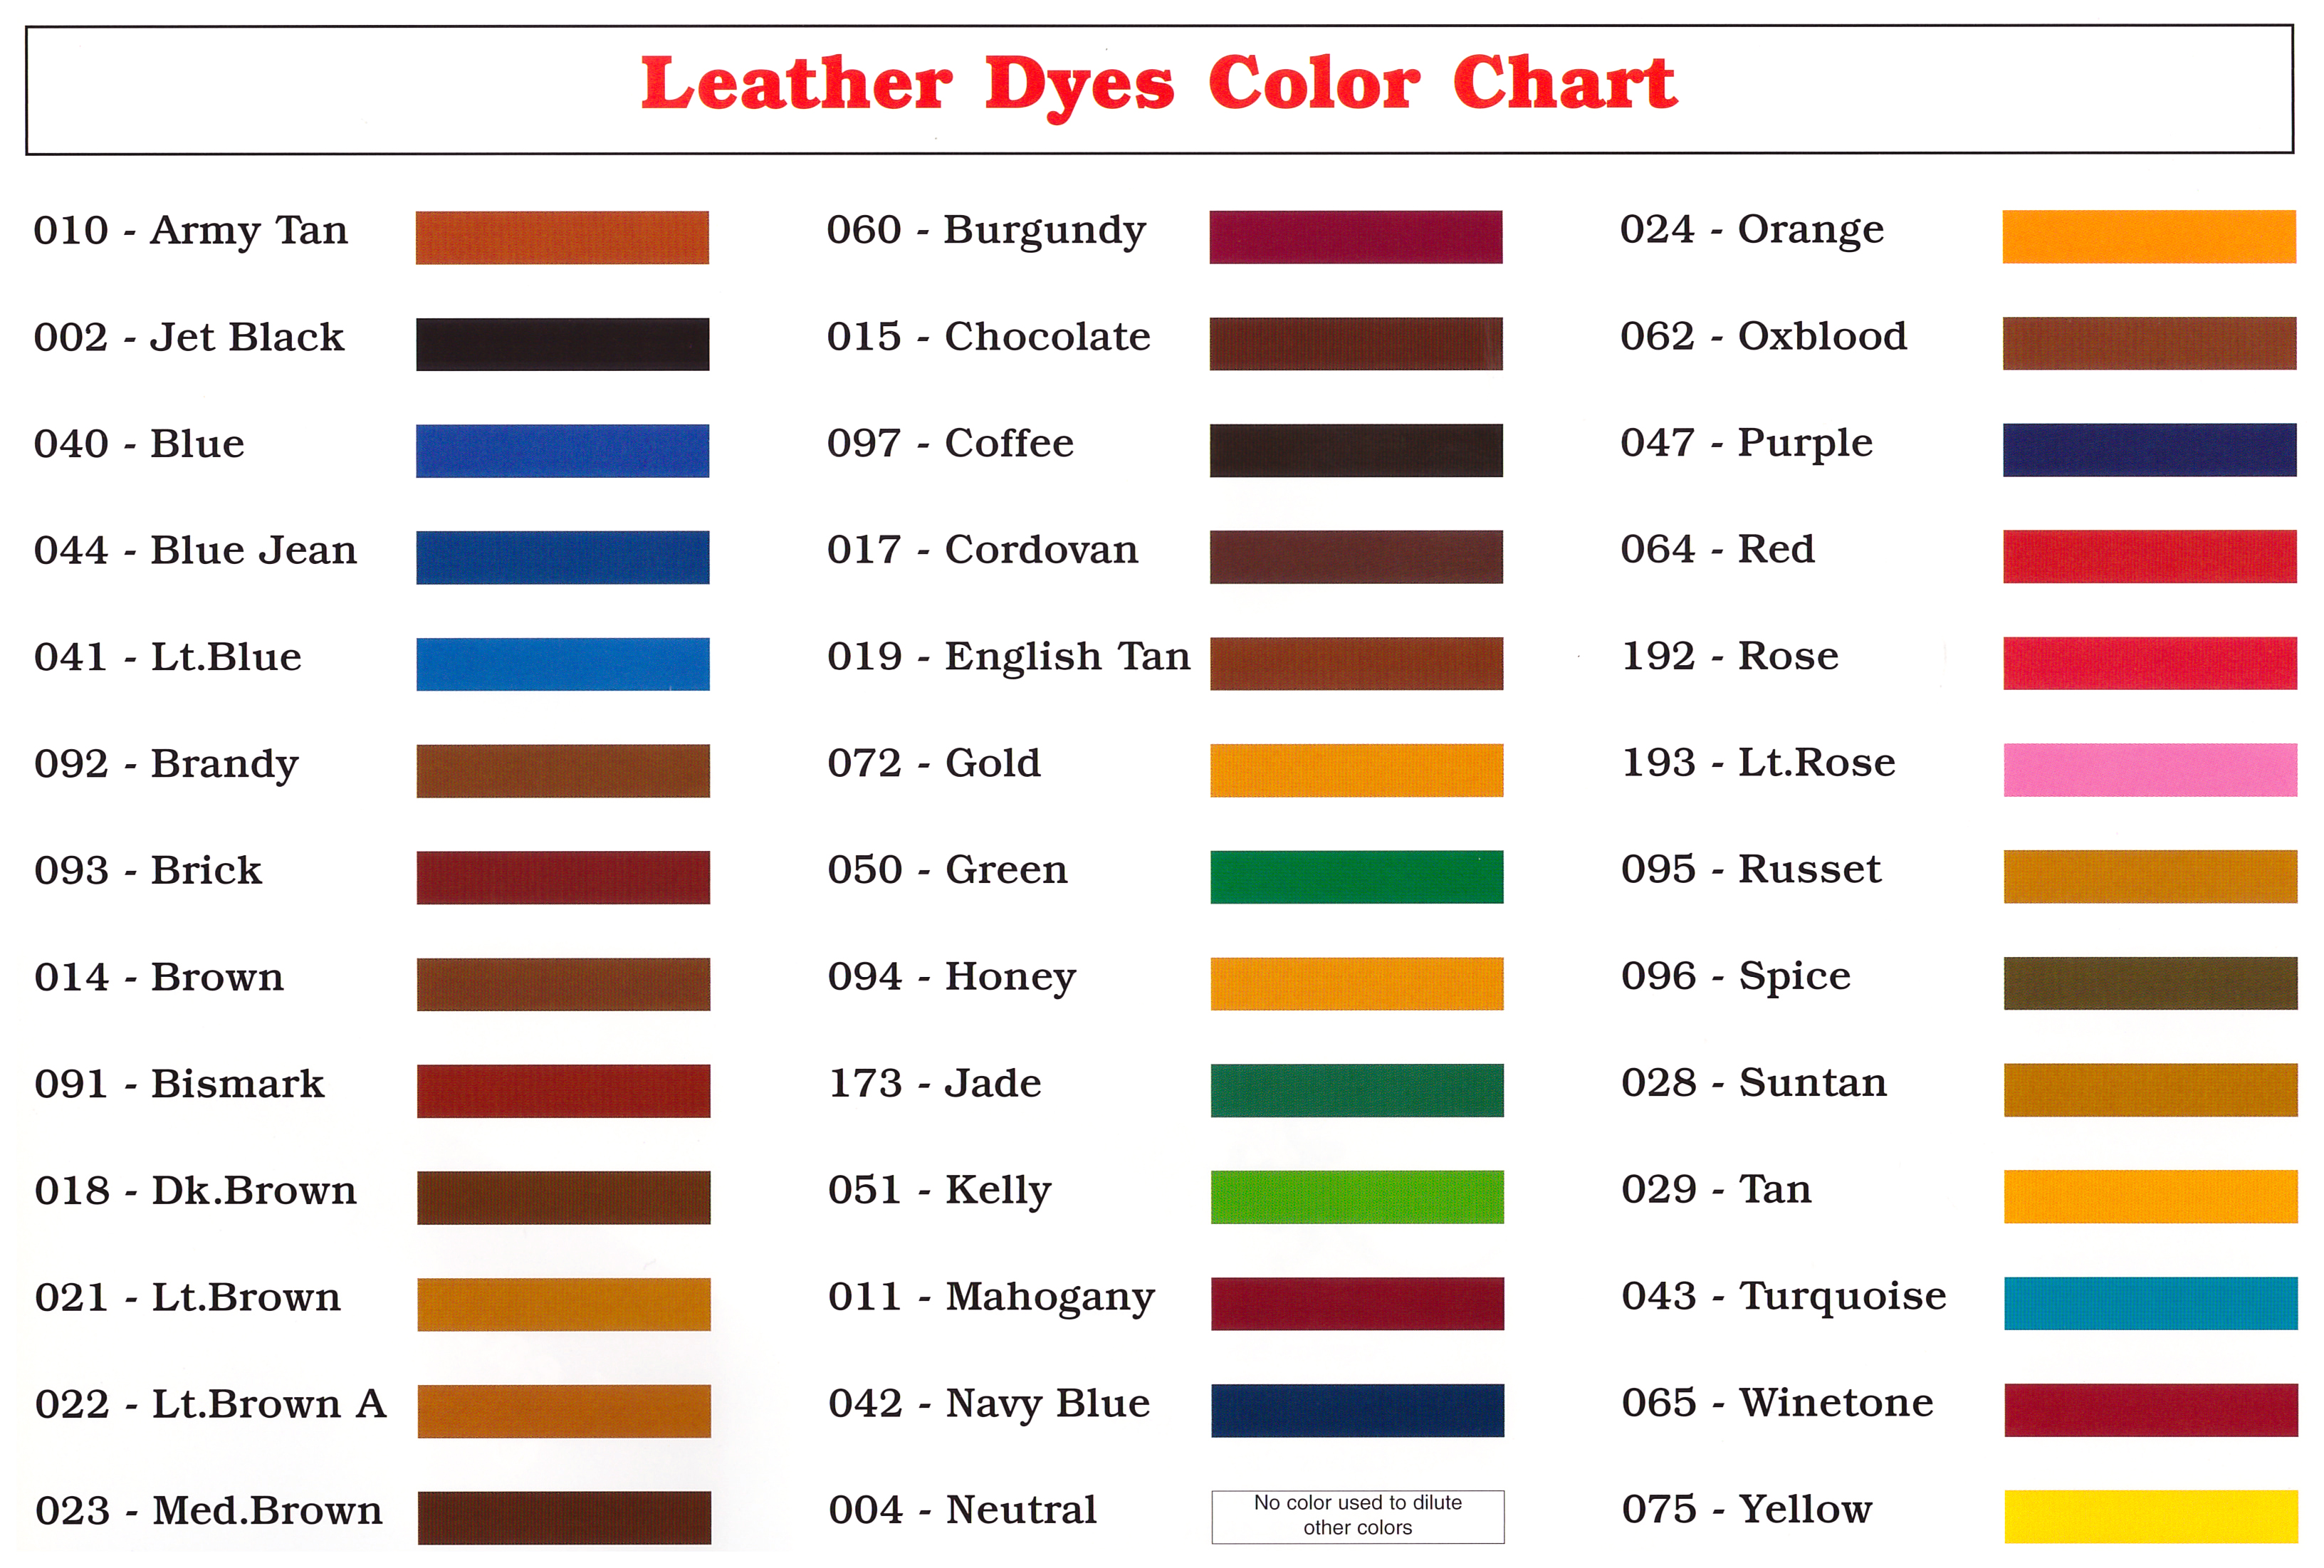 Meltonian Leather Dye Up, Meltonian Leather Dye